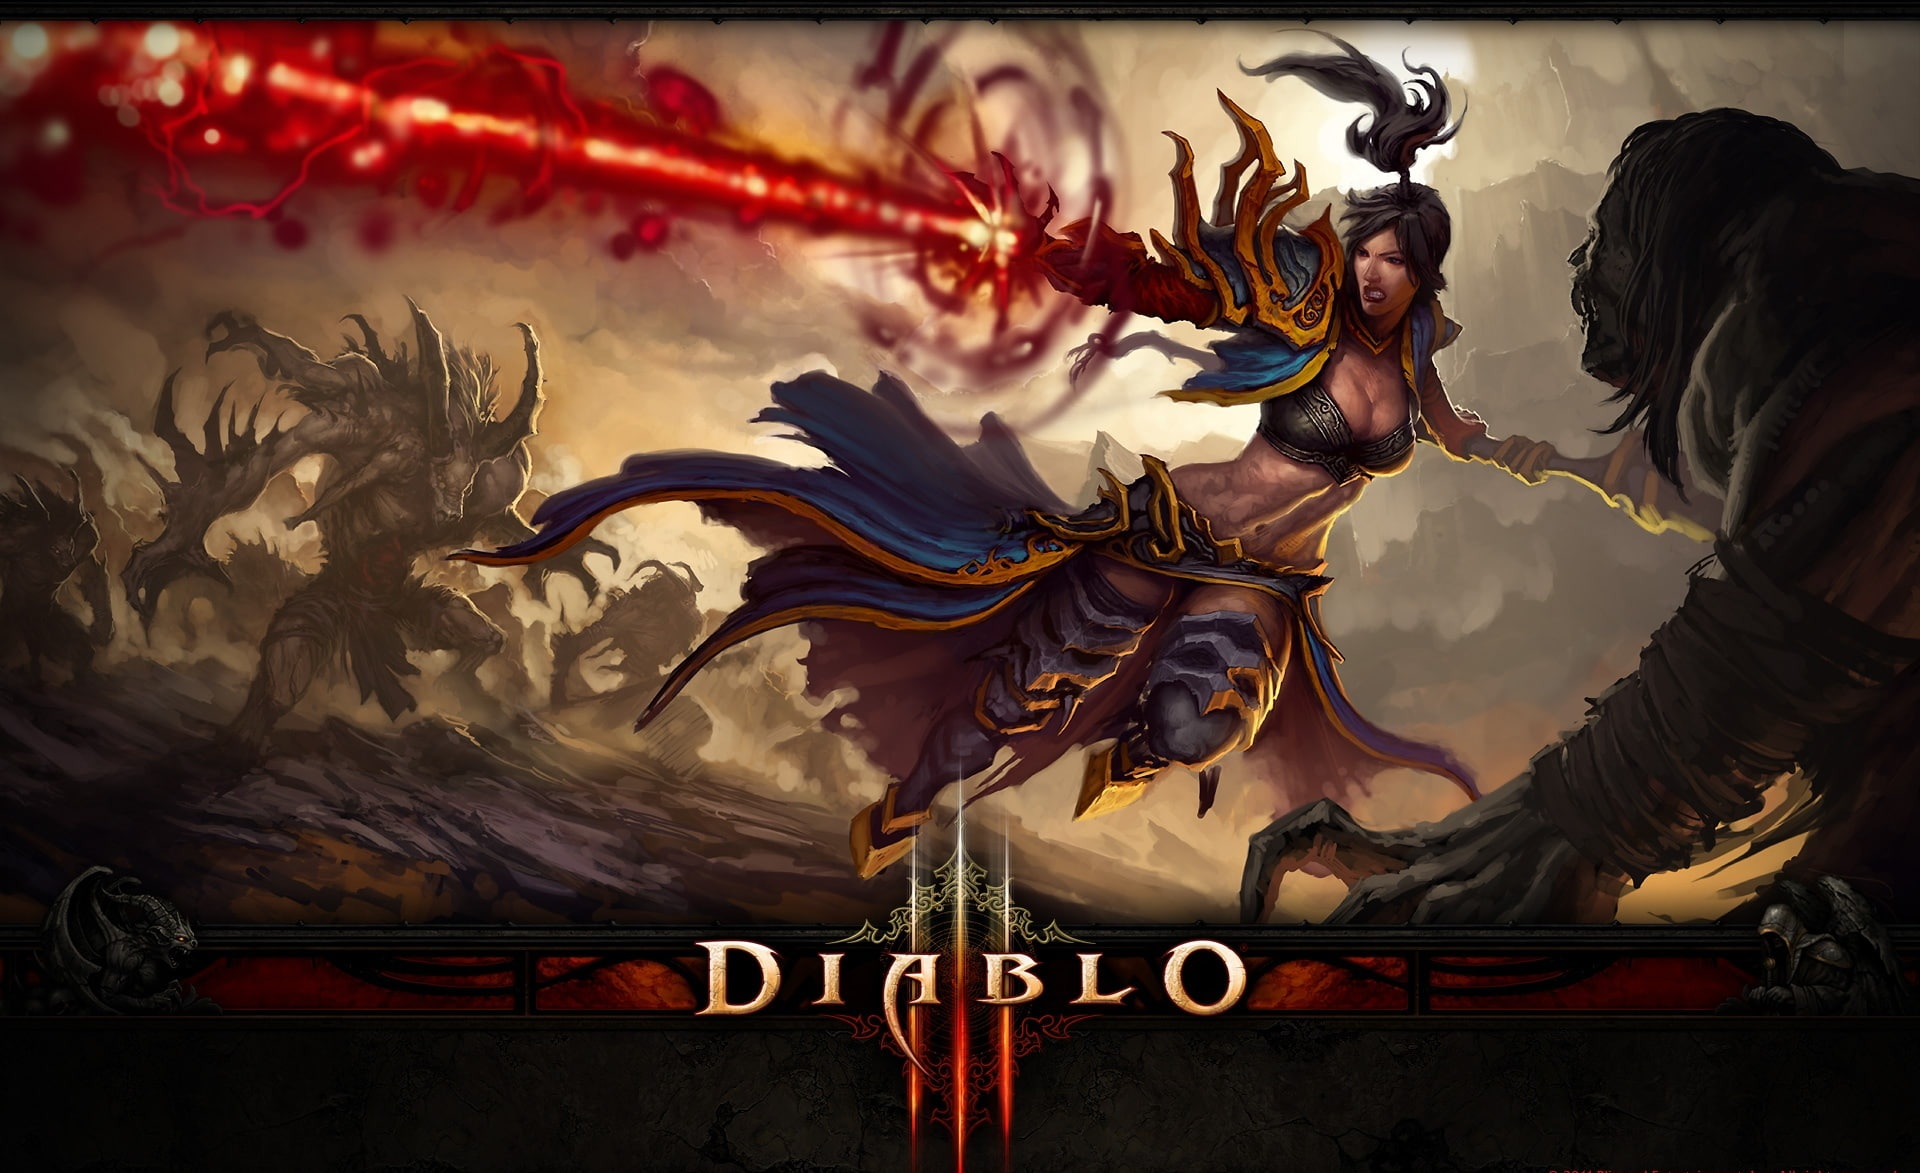 Diablo III - Battle, Diablo III poster, Games, video game, concept art